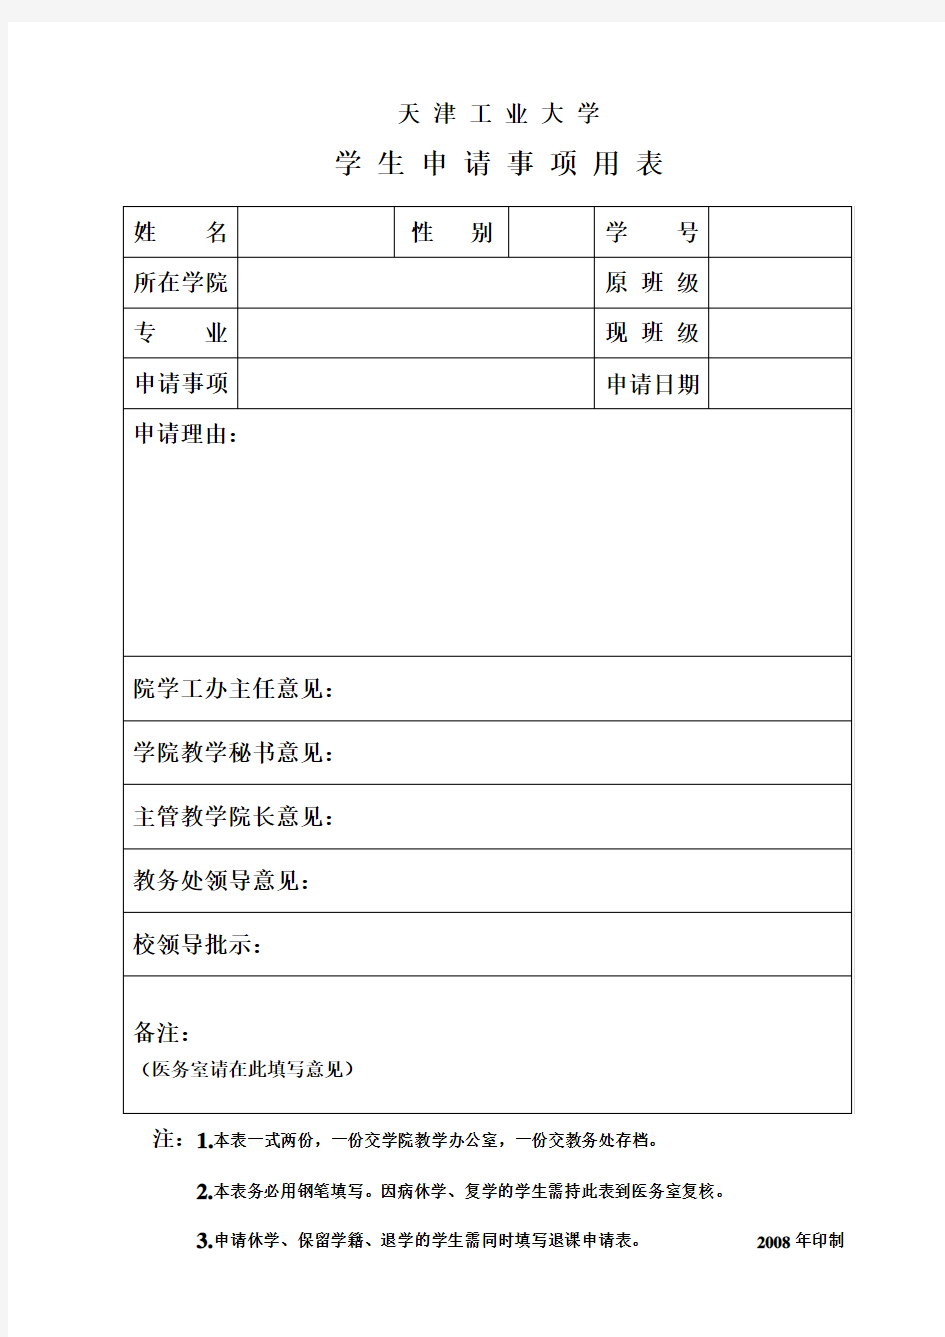 天津工业大学学生申请表(新)